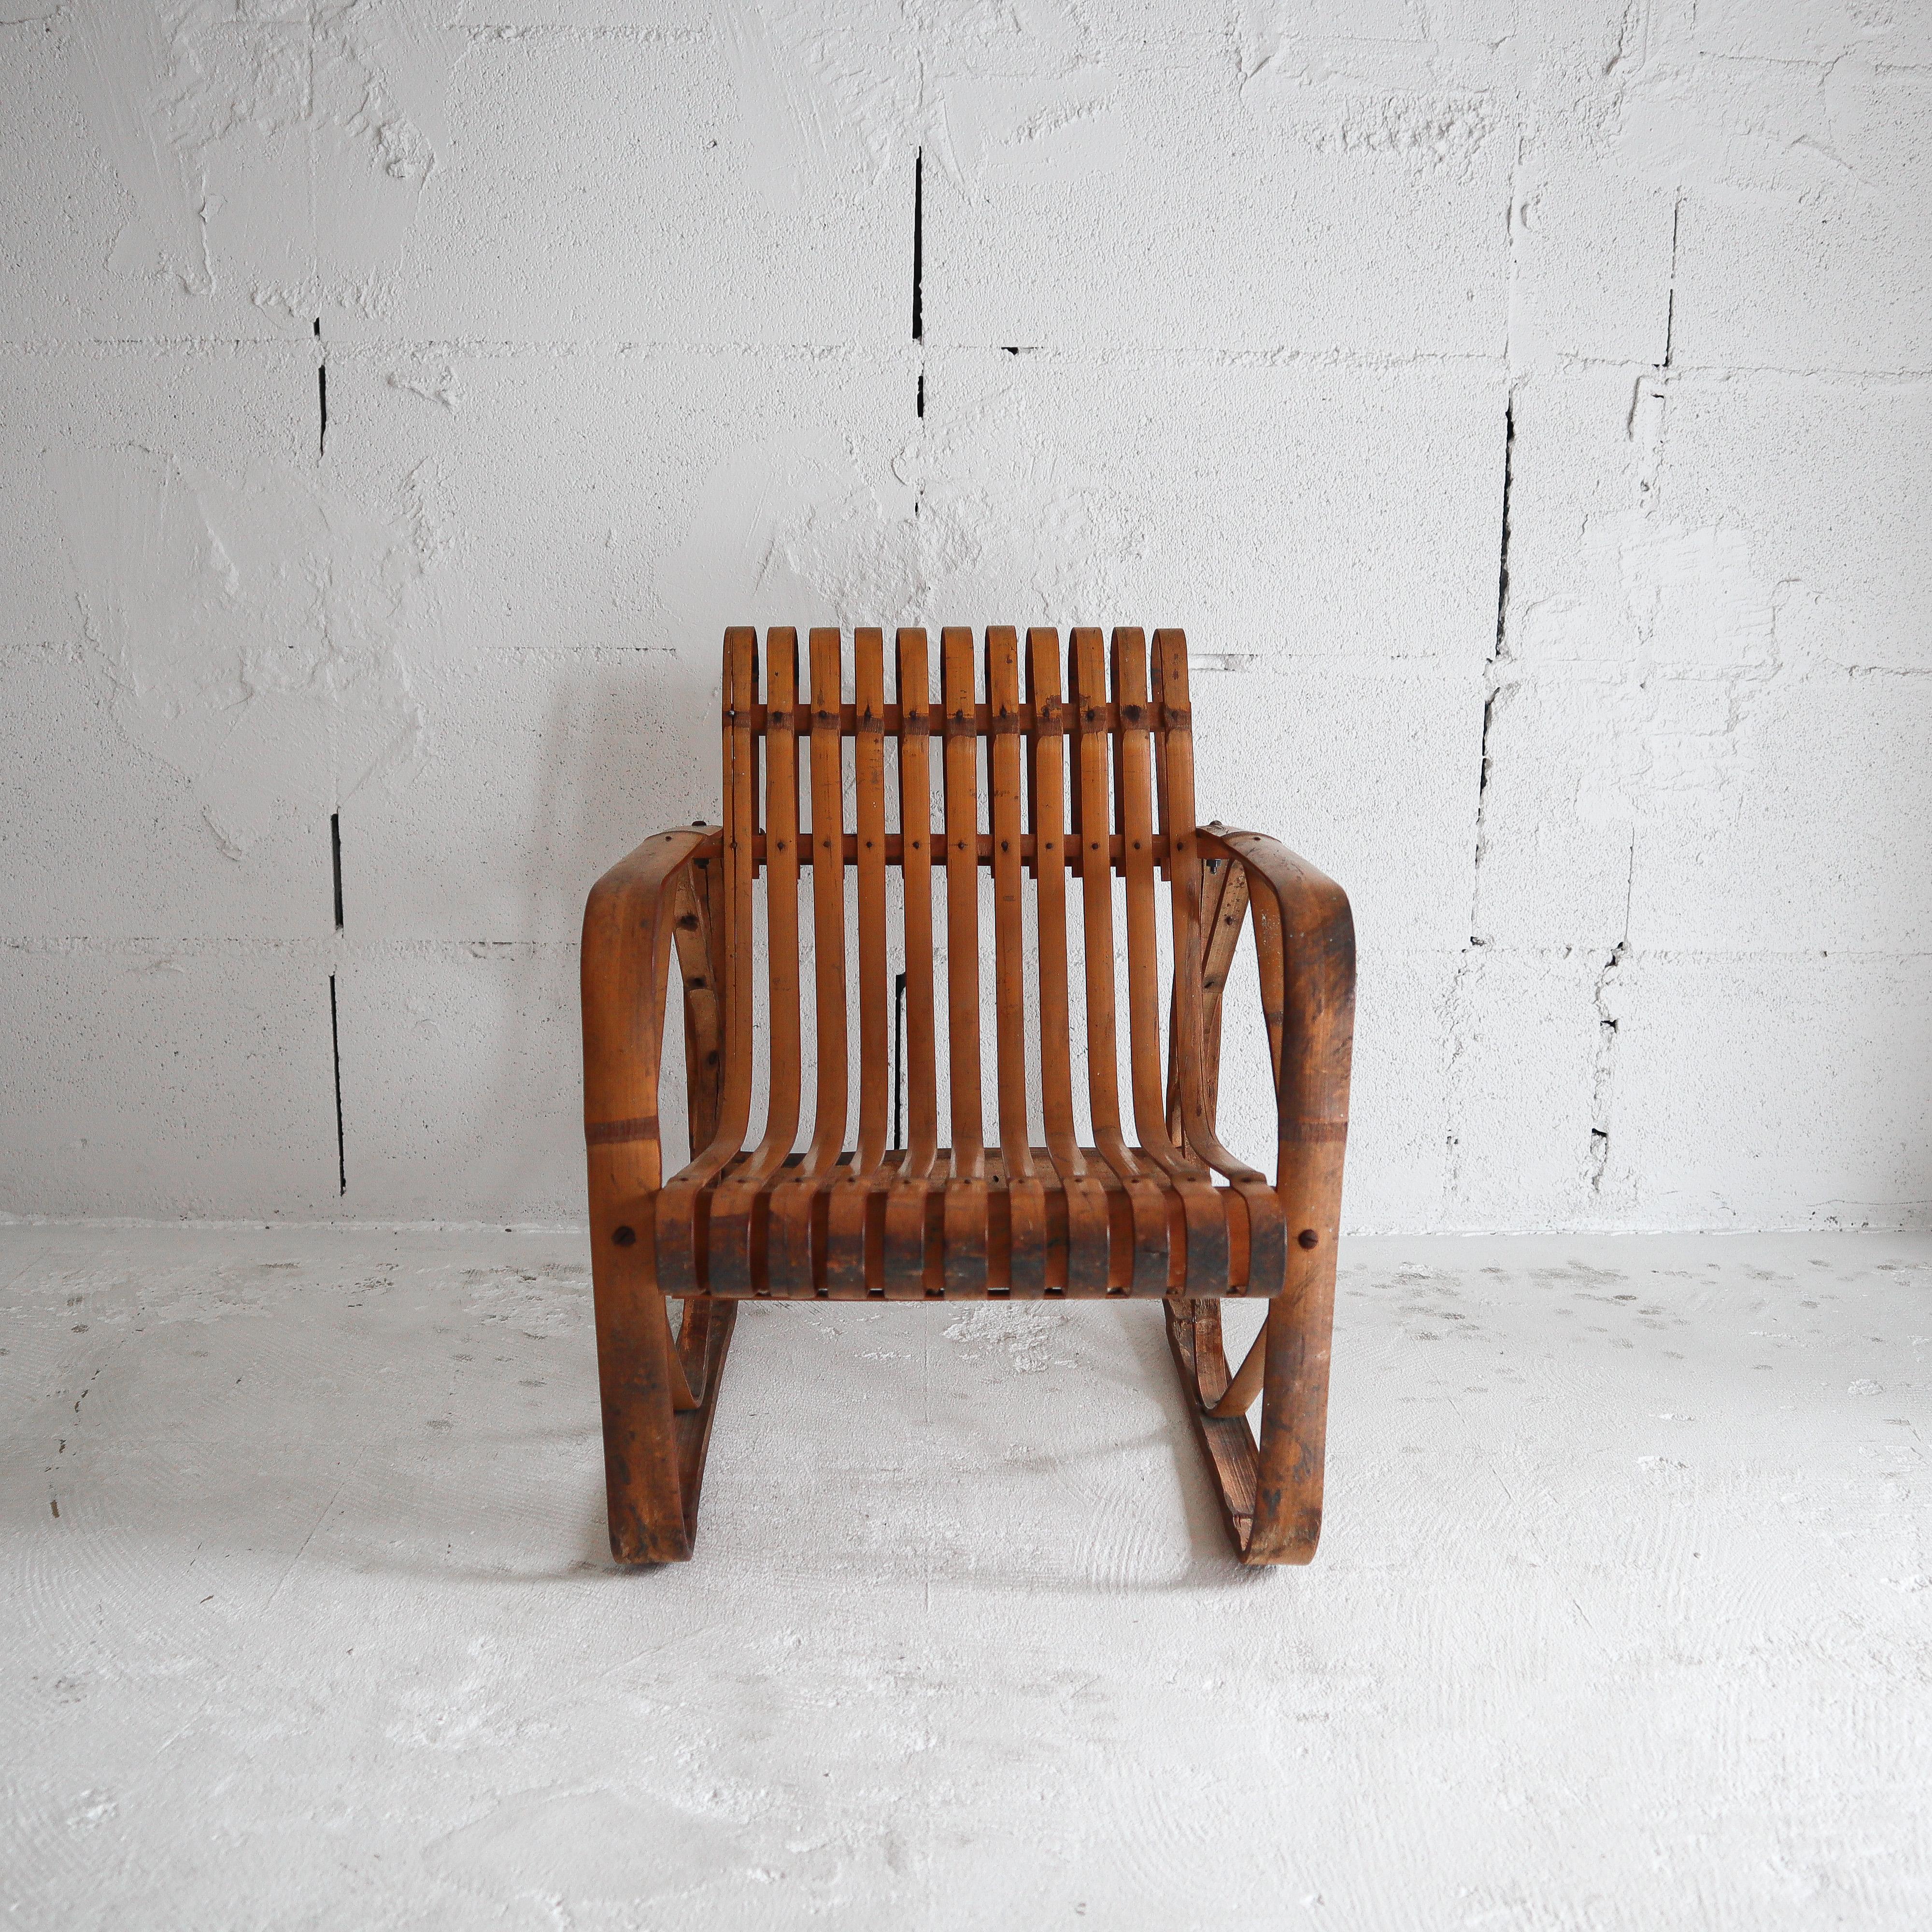 Dieser äußerst seltene Stuhl wurde in den frühen 1900er Jahren von erfahrenen japanischen Handwerkern in der Shibayama-Fabrik in Nagoya, Japan, handgefertigt. Dieser Stuhl war ein wichtiger Bestandteil von Charlotte Perriands Studium des japanischen